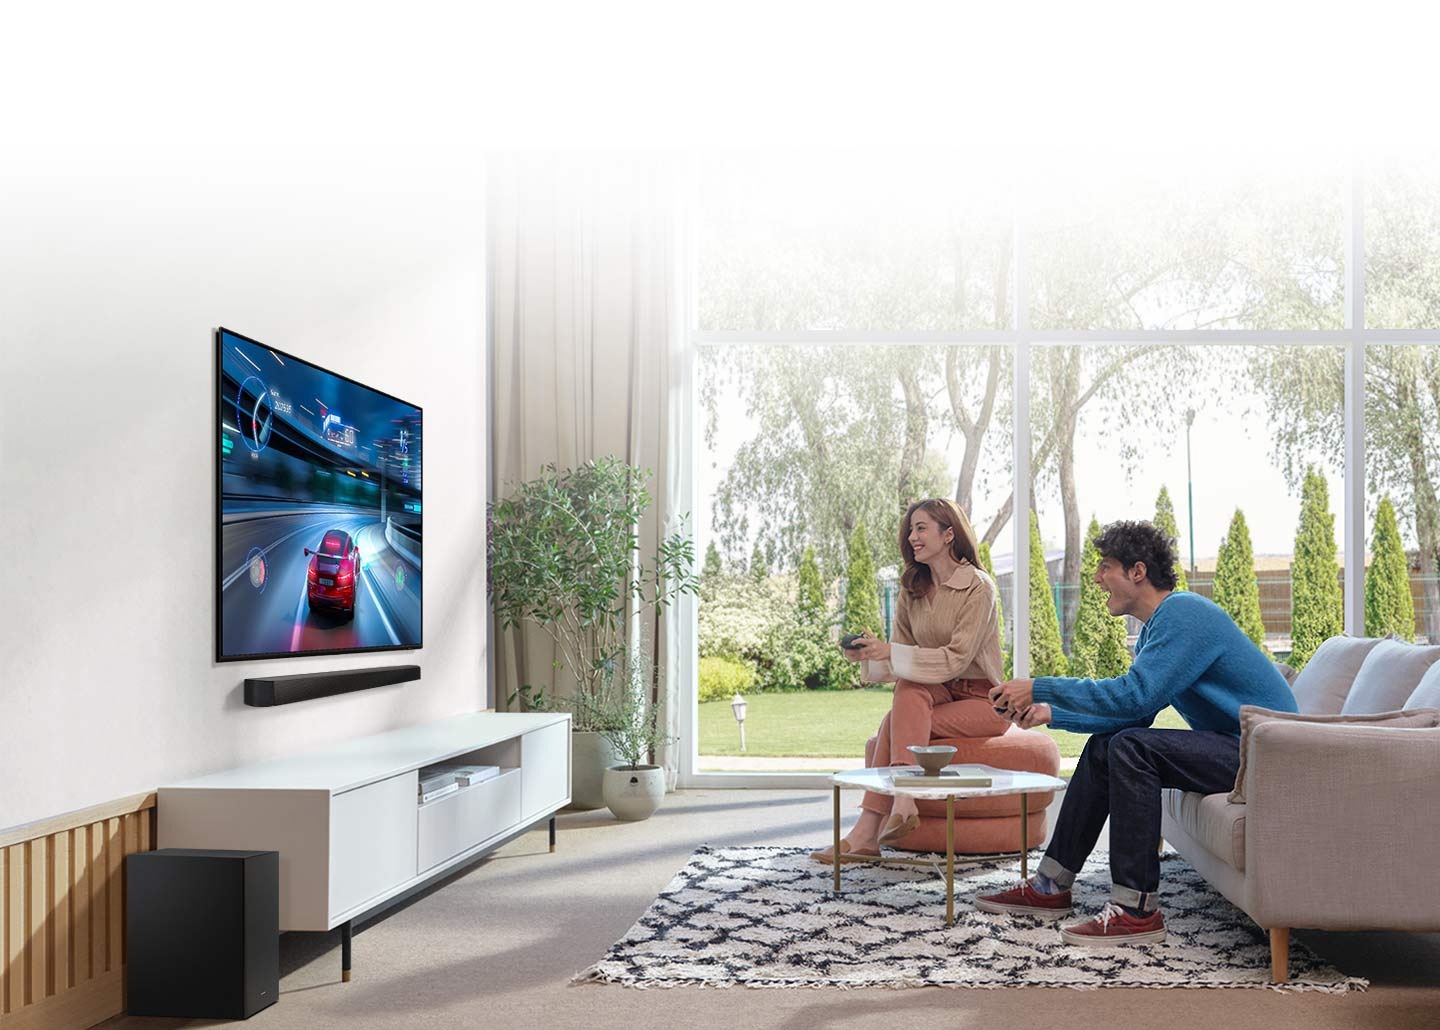 Muž a žena hrají závodní hru na svém televizoru, pod kterým je Soundbar, který poskytuje optimalizovaný zvuk s herním režimem.